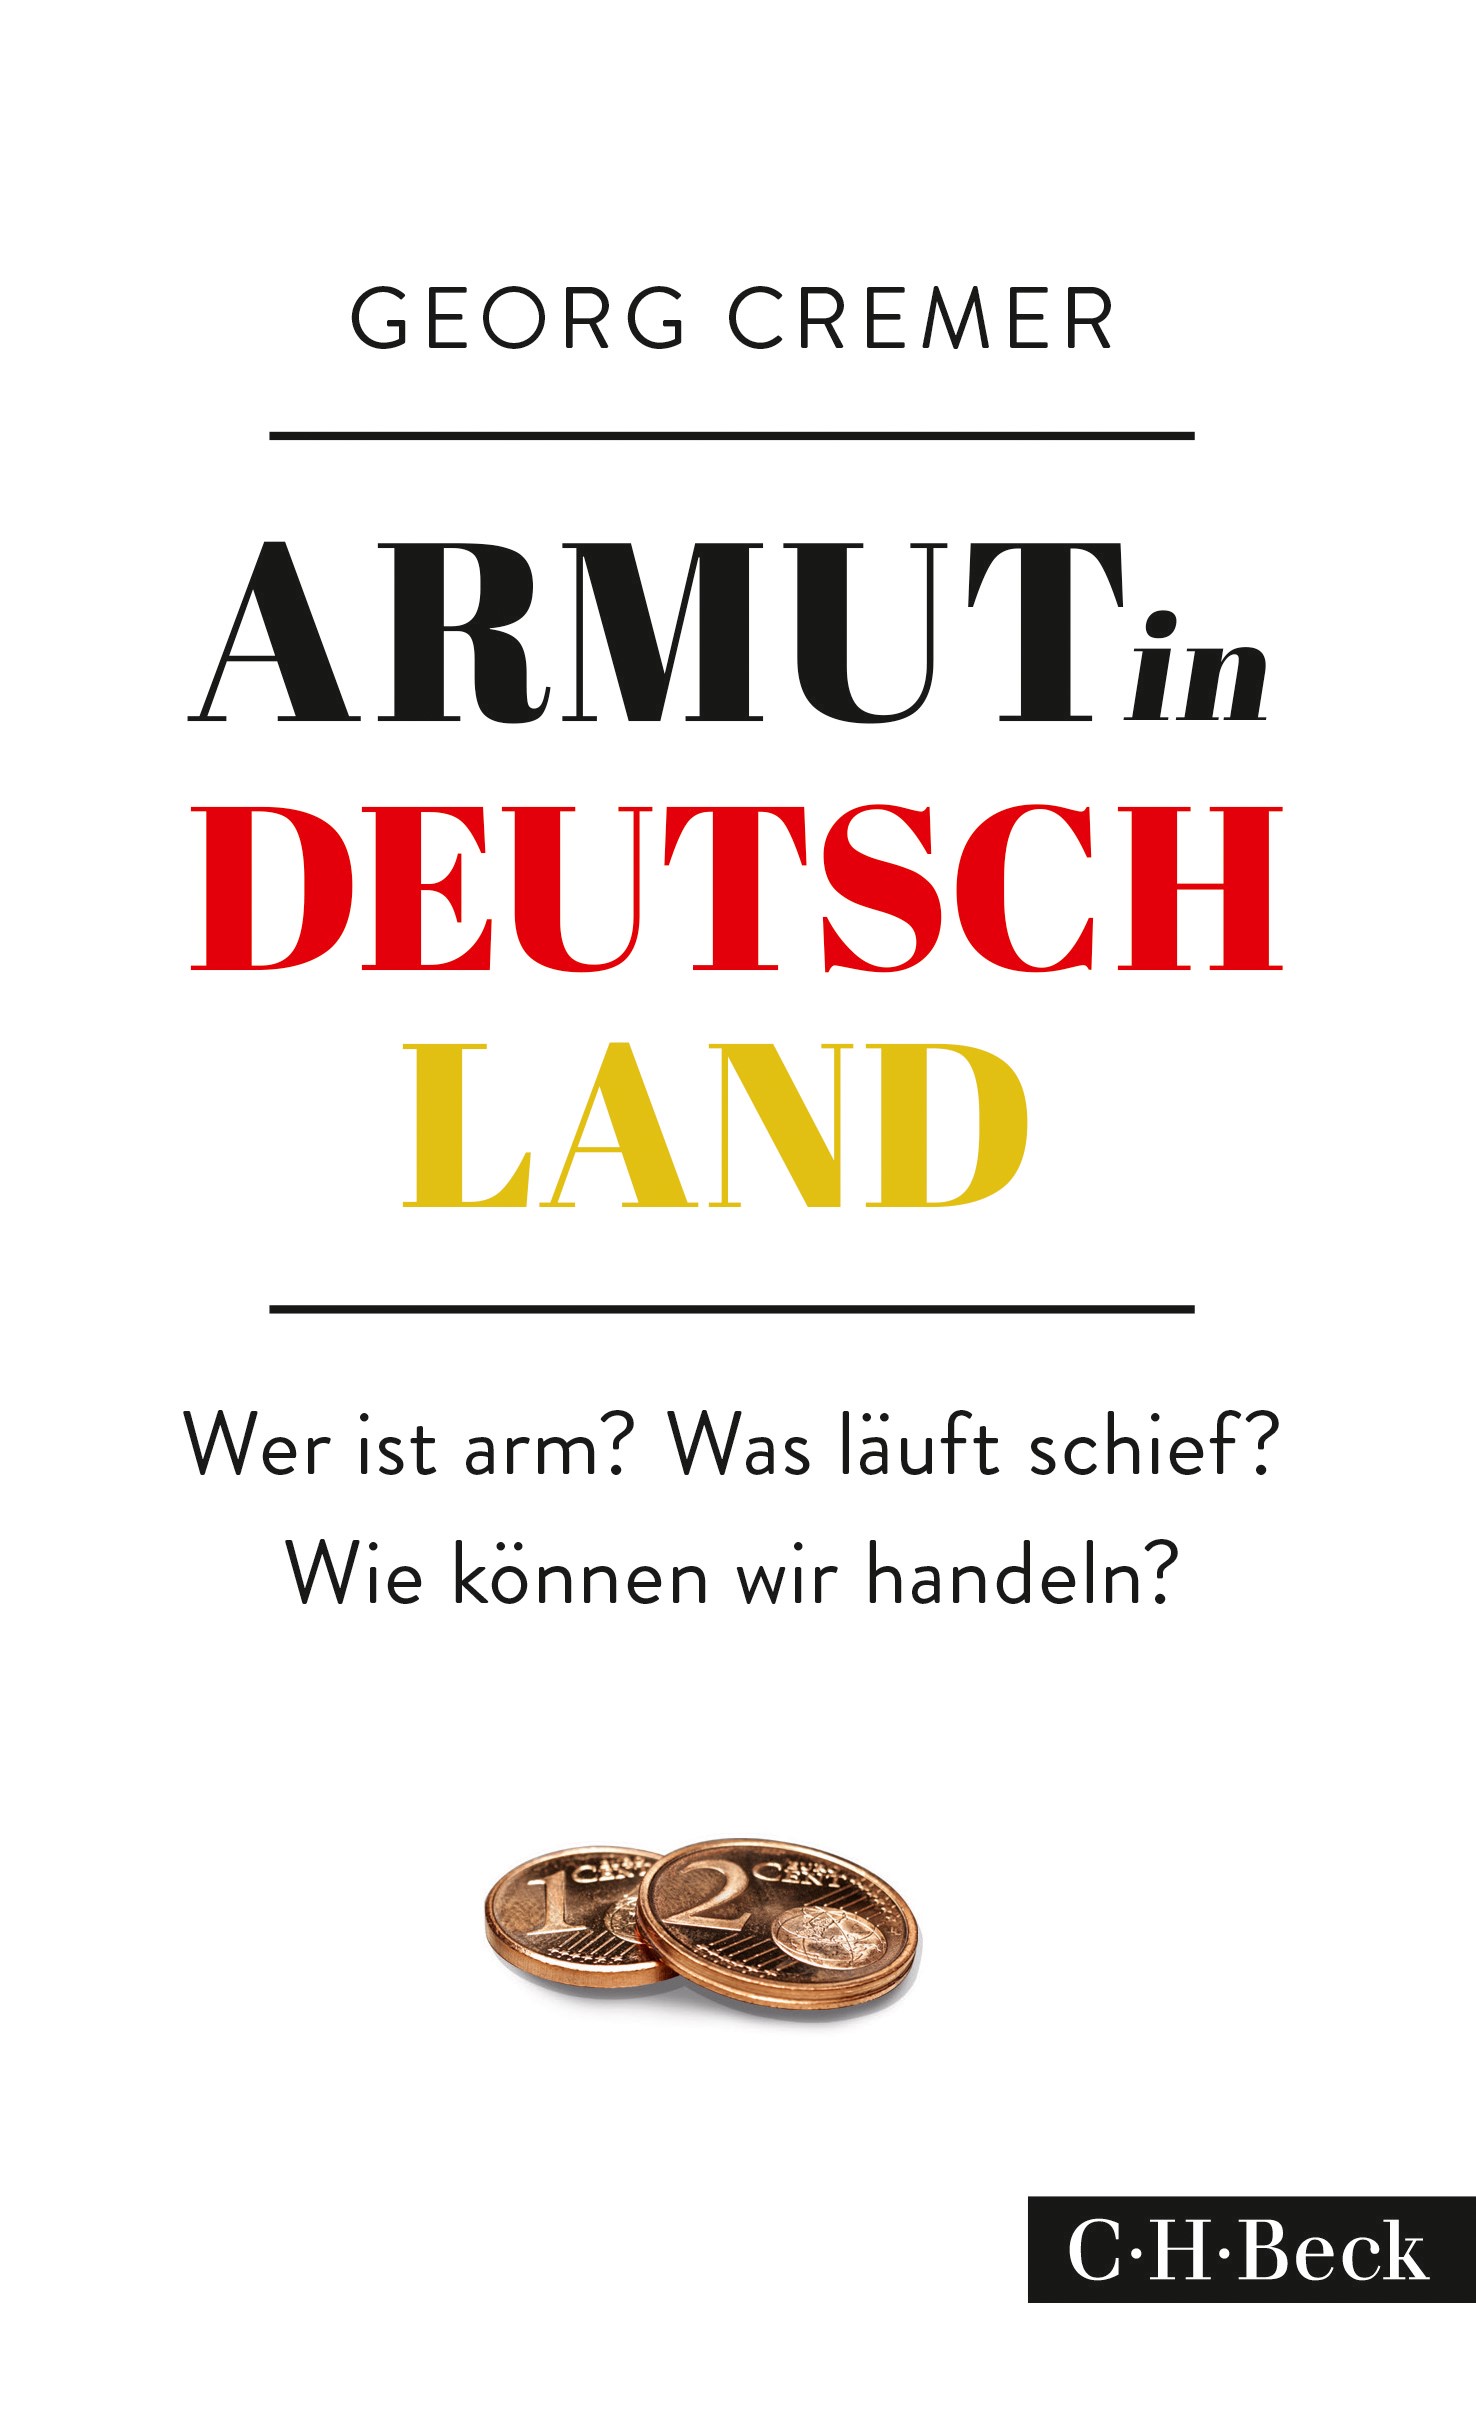 Cover: Cremer, Georg, Armut in Deutschland